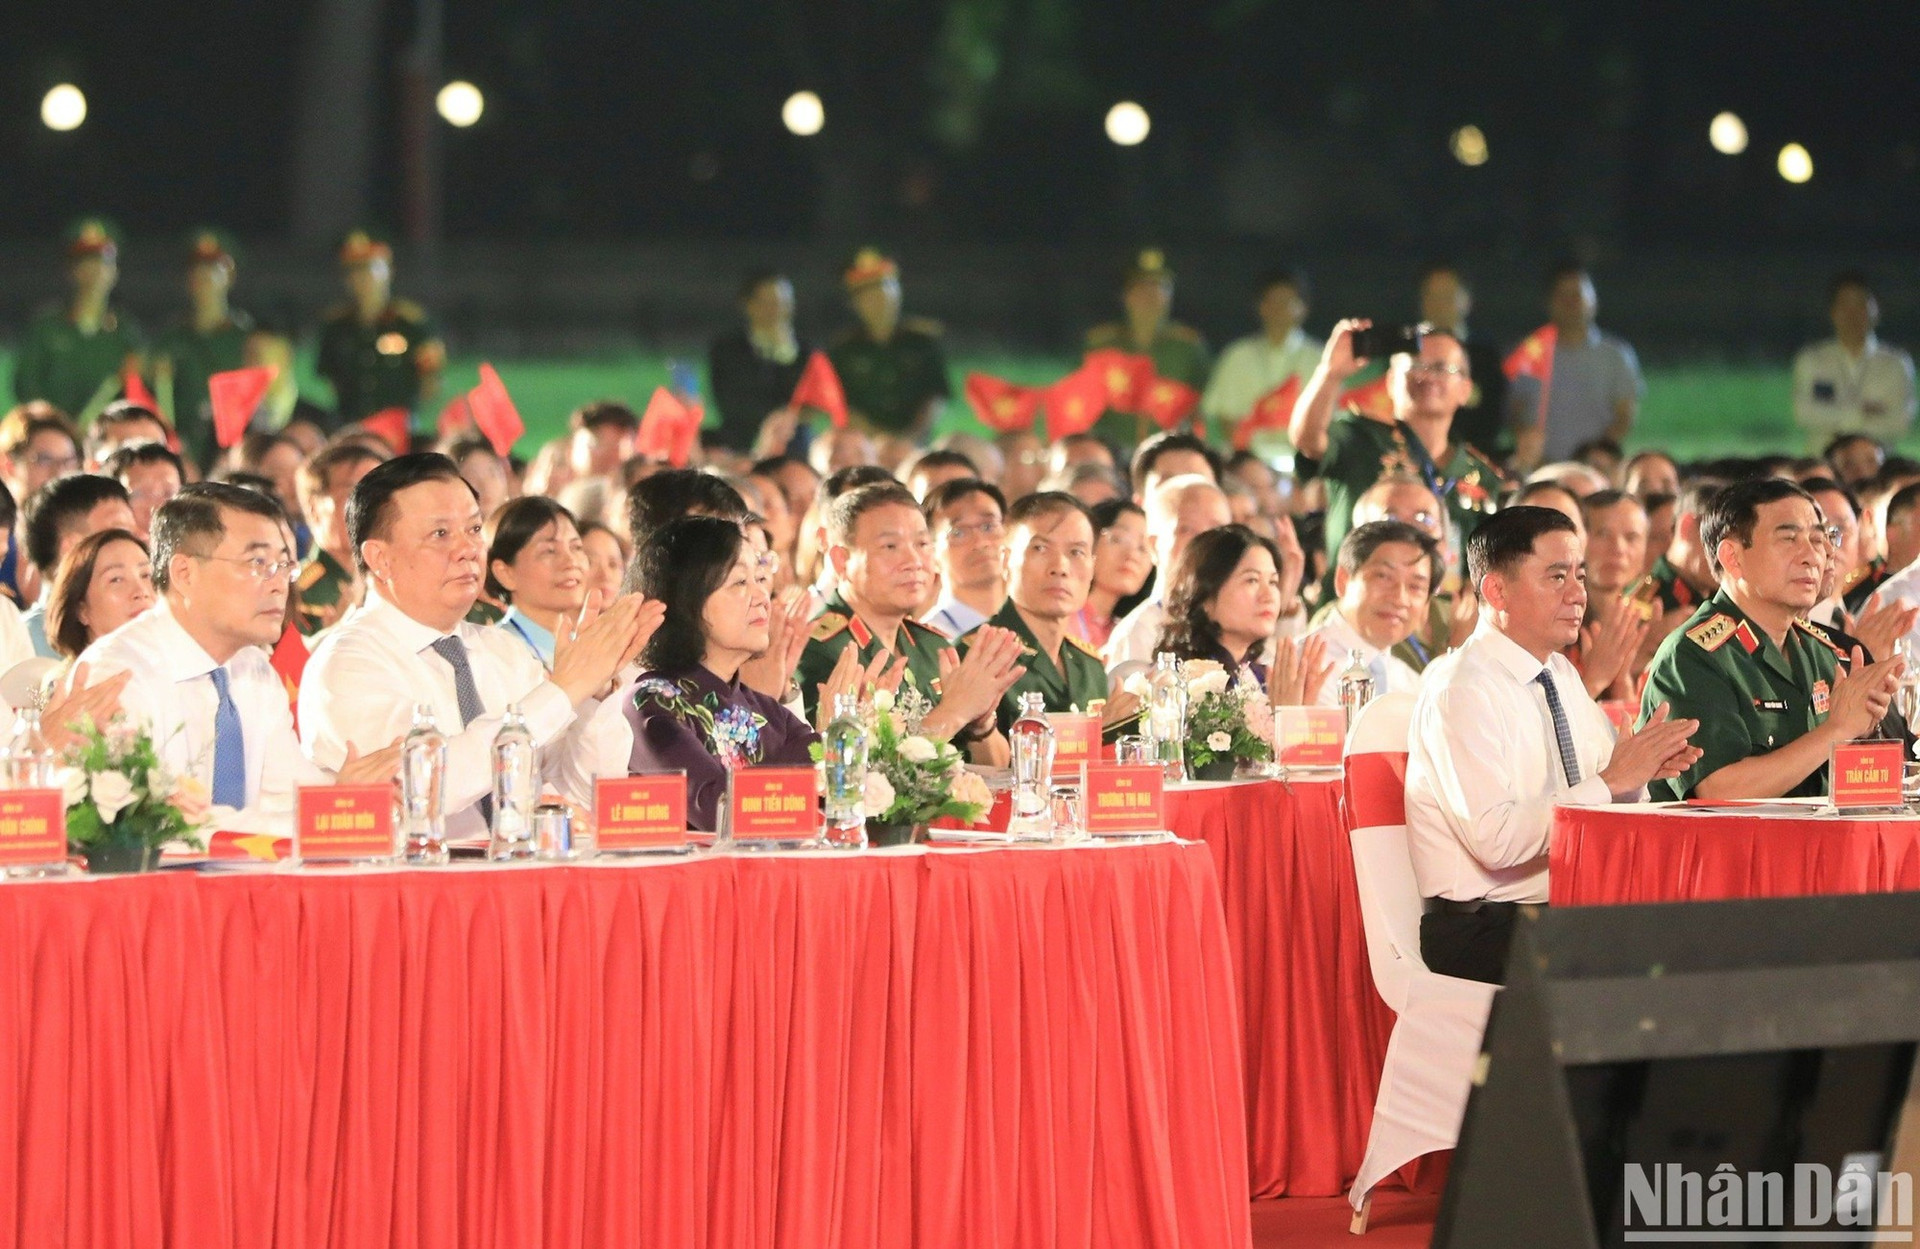 Đồng chí Trương Thị Mai, Ủy viên Bộ Chính trị, Thường trực Ban Bí thư, Trưởng Ban Tổ chức Trung ương, Trưởng Ban Chỉ đạo Trung ương kỷ niệm các ngày lễ lớn và sự kiện quan trọng của đất nước trong 3 năm 2023-2025, cùng các đồng chí lãnh đạo Đảng, Nhà nước tham dự chương trình từ điểm cầu Hà Nội.